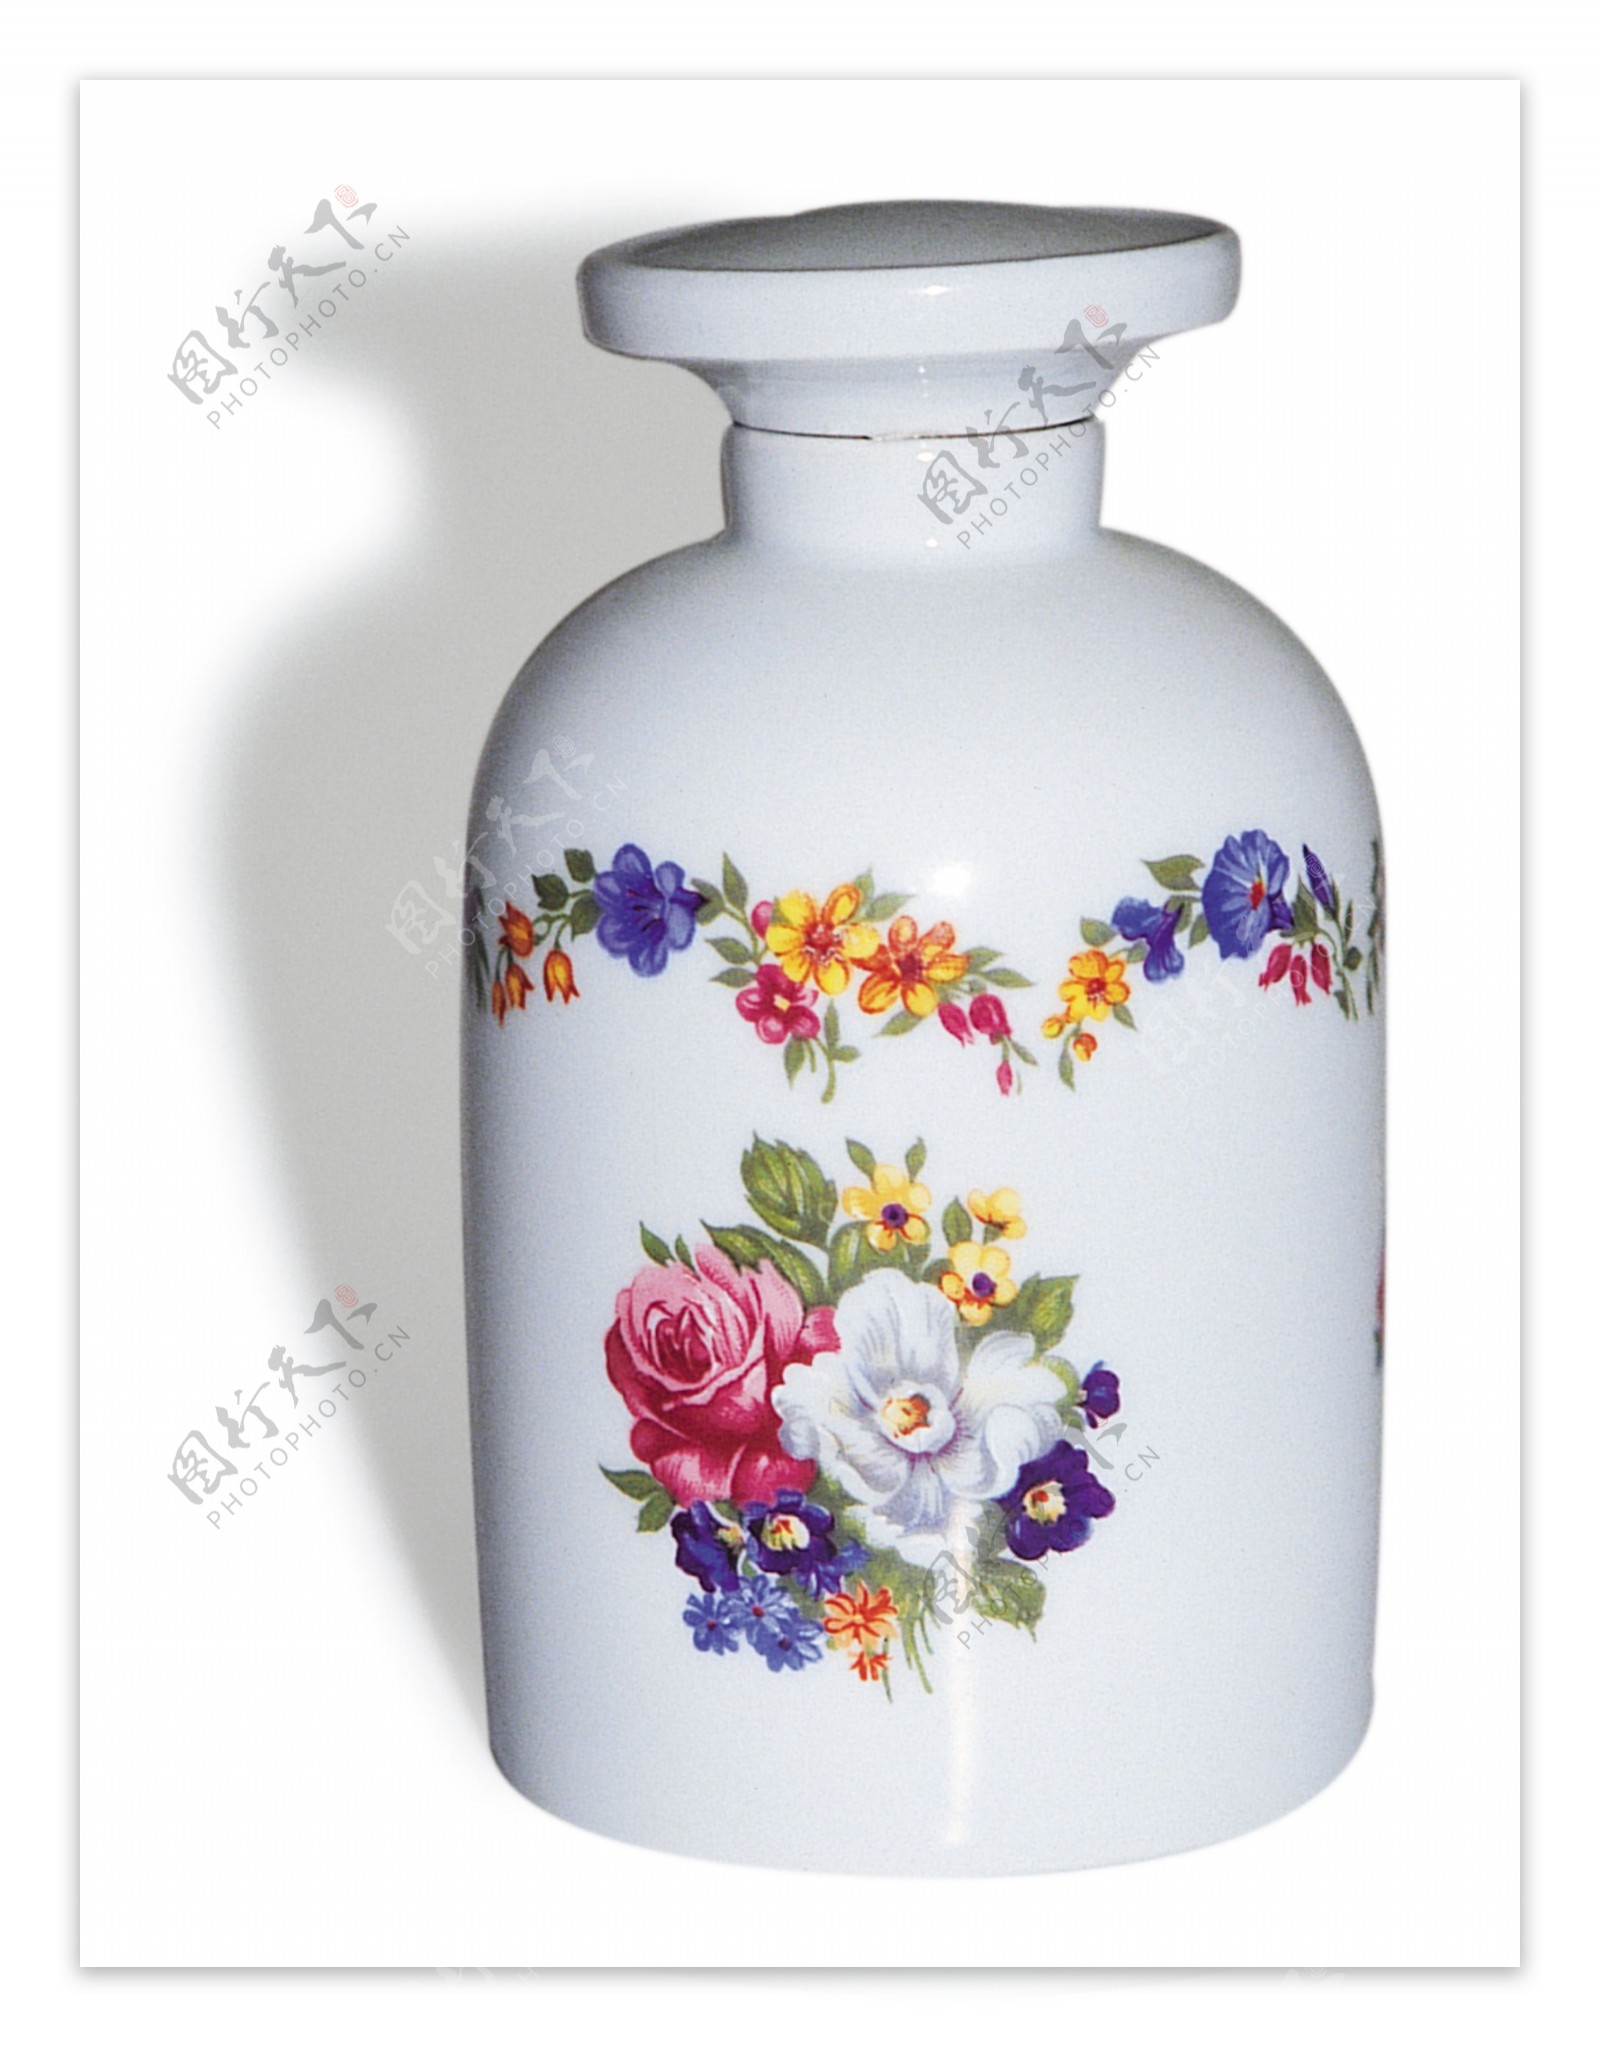 欧洲欧式瓷器花瓶图片